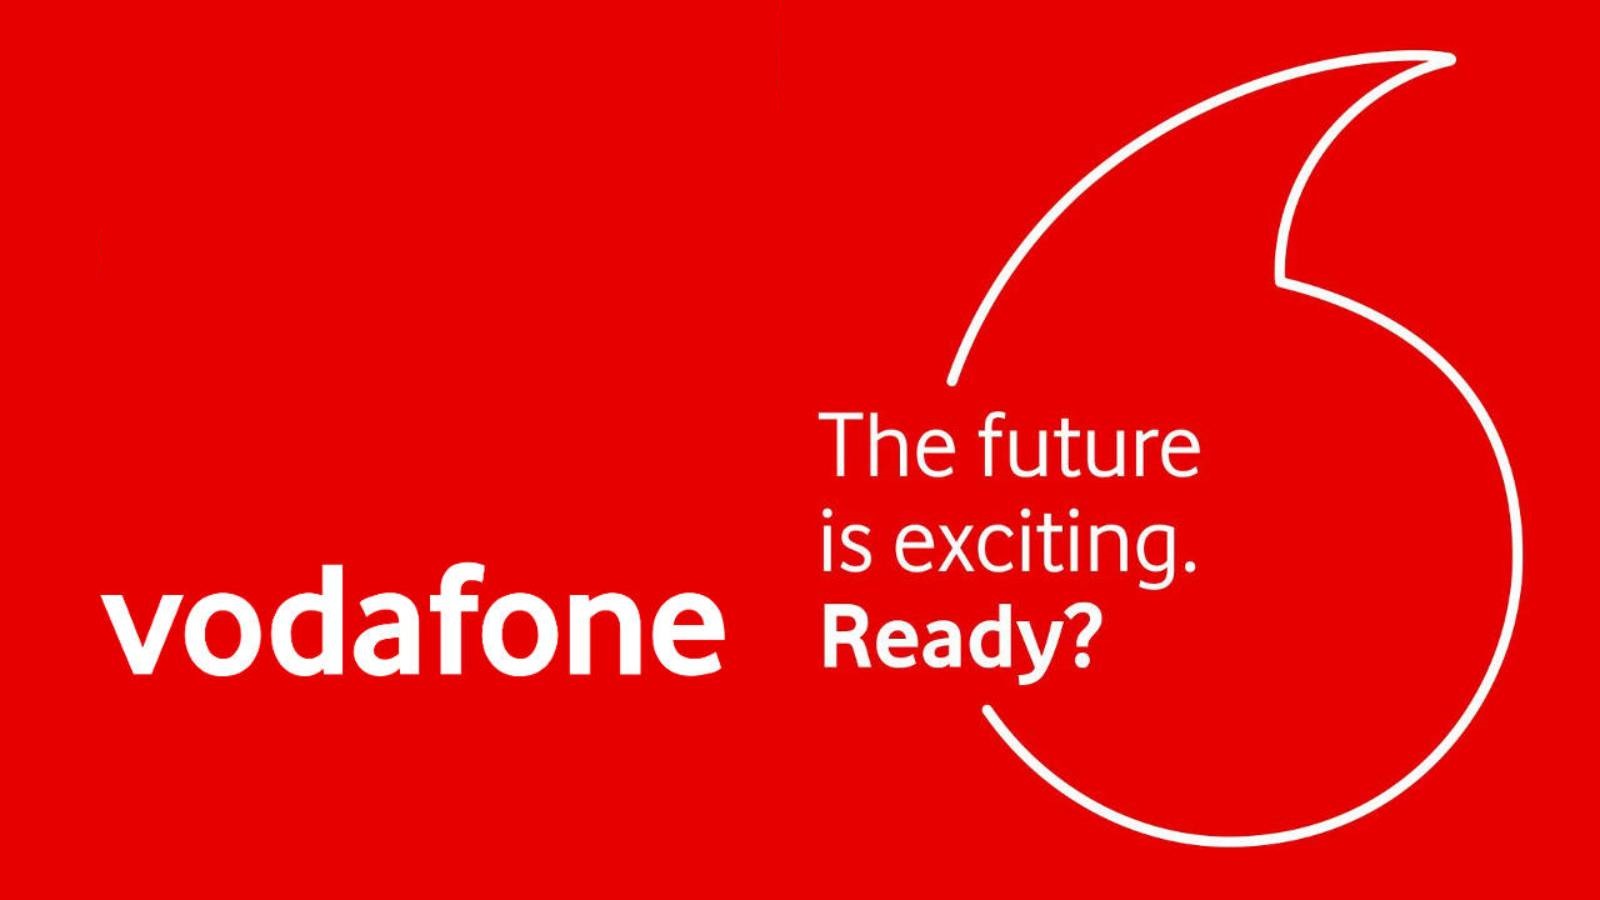 Ofertas de noticias oficiales de Vodafone GRATIS para clientes rumanos